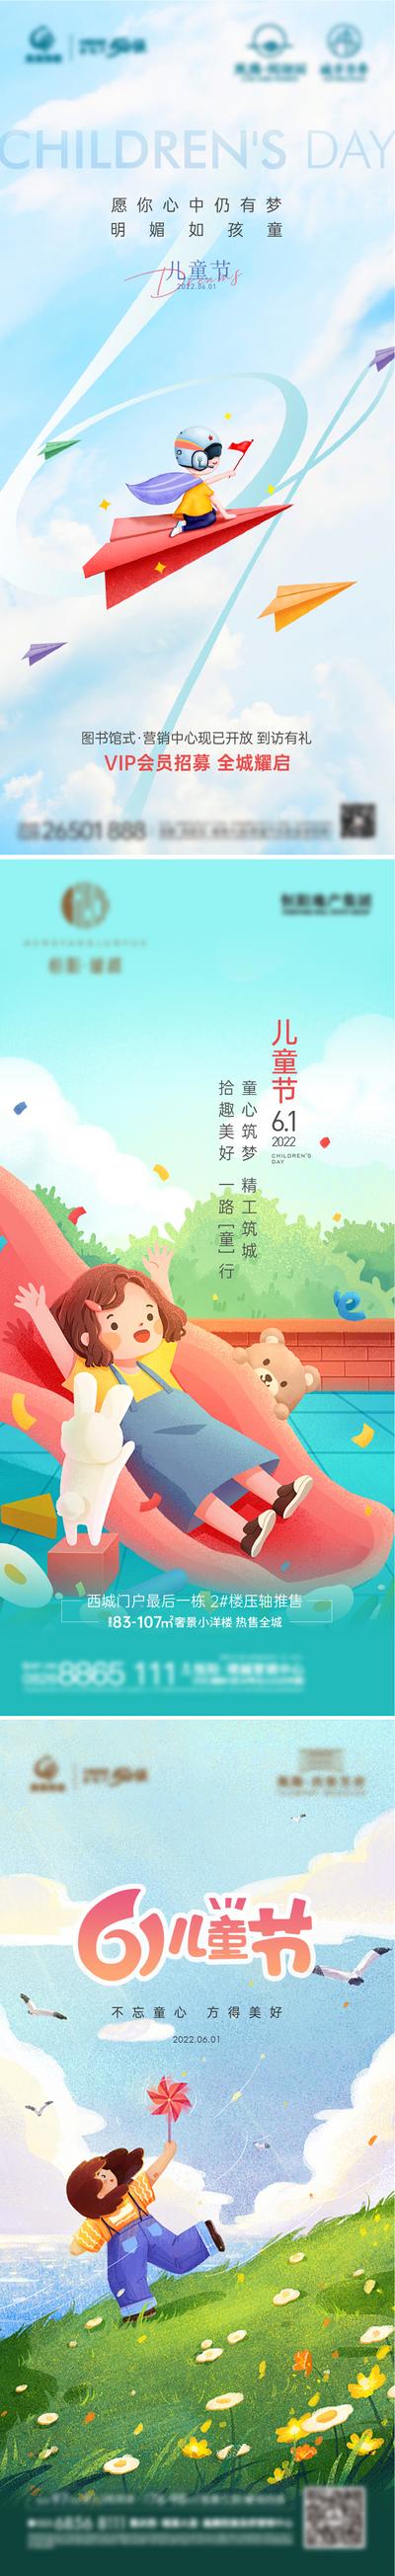 南门网 海报 地产 公历节日 儿童节 滑梯 梦想 小孩 插画